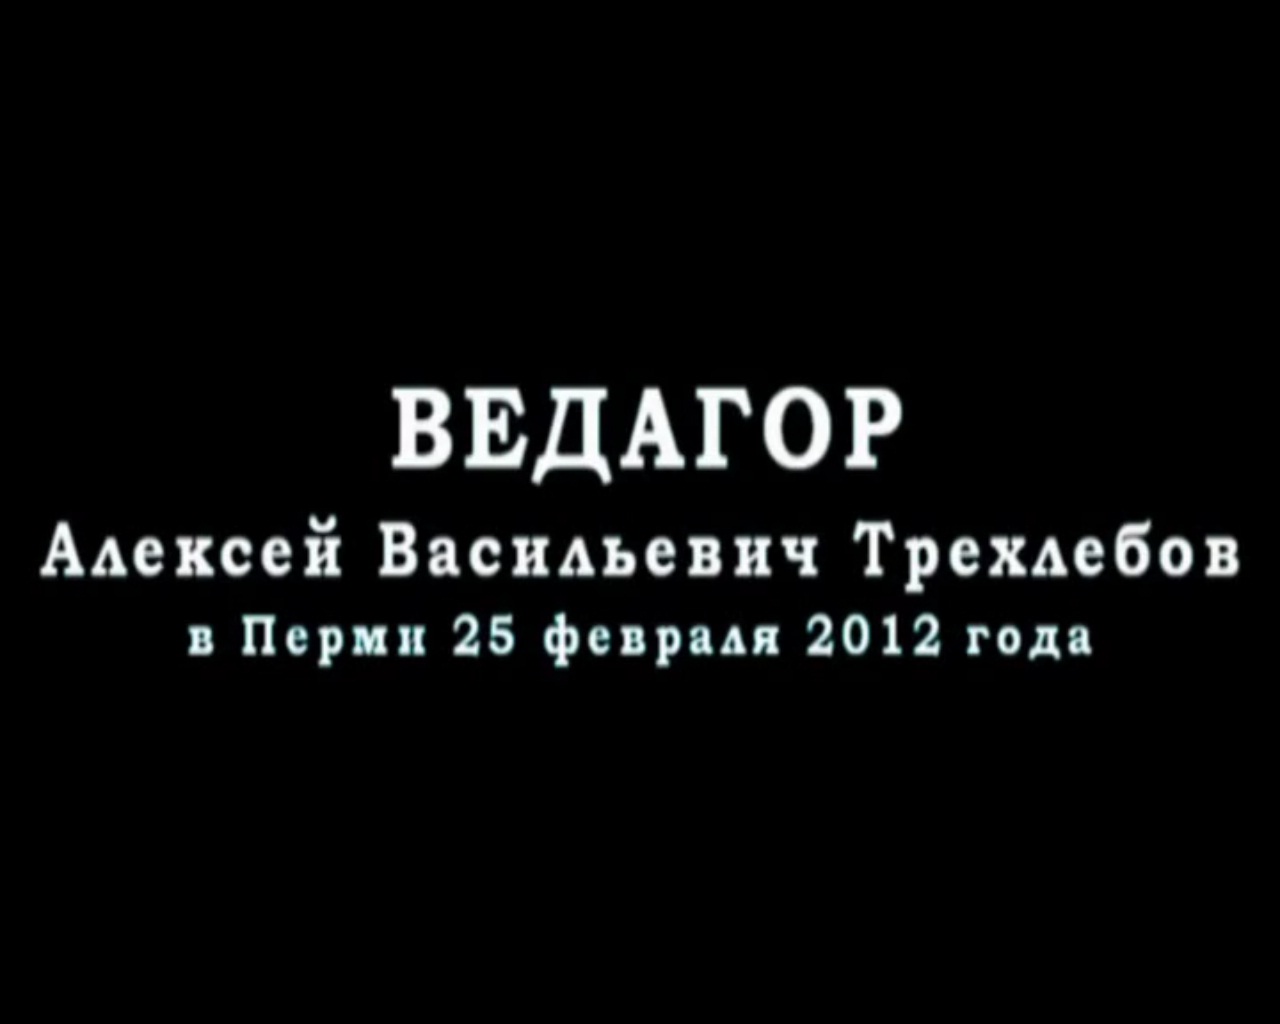 Скриншот 2 Трехлебов А.В. Пермь - (2012.02.25)